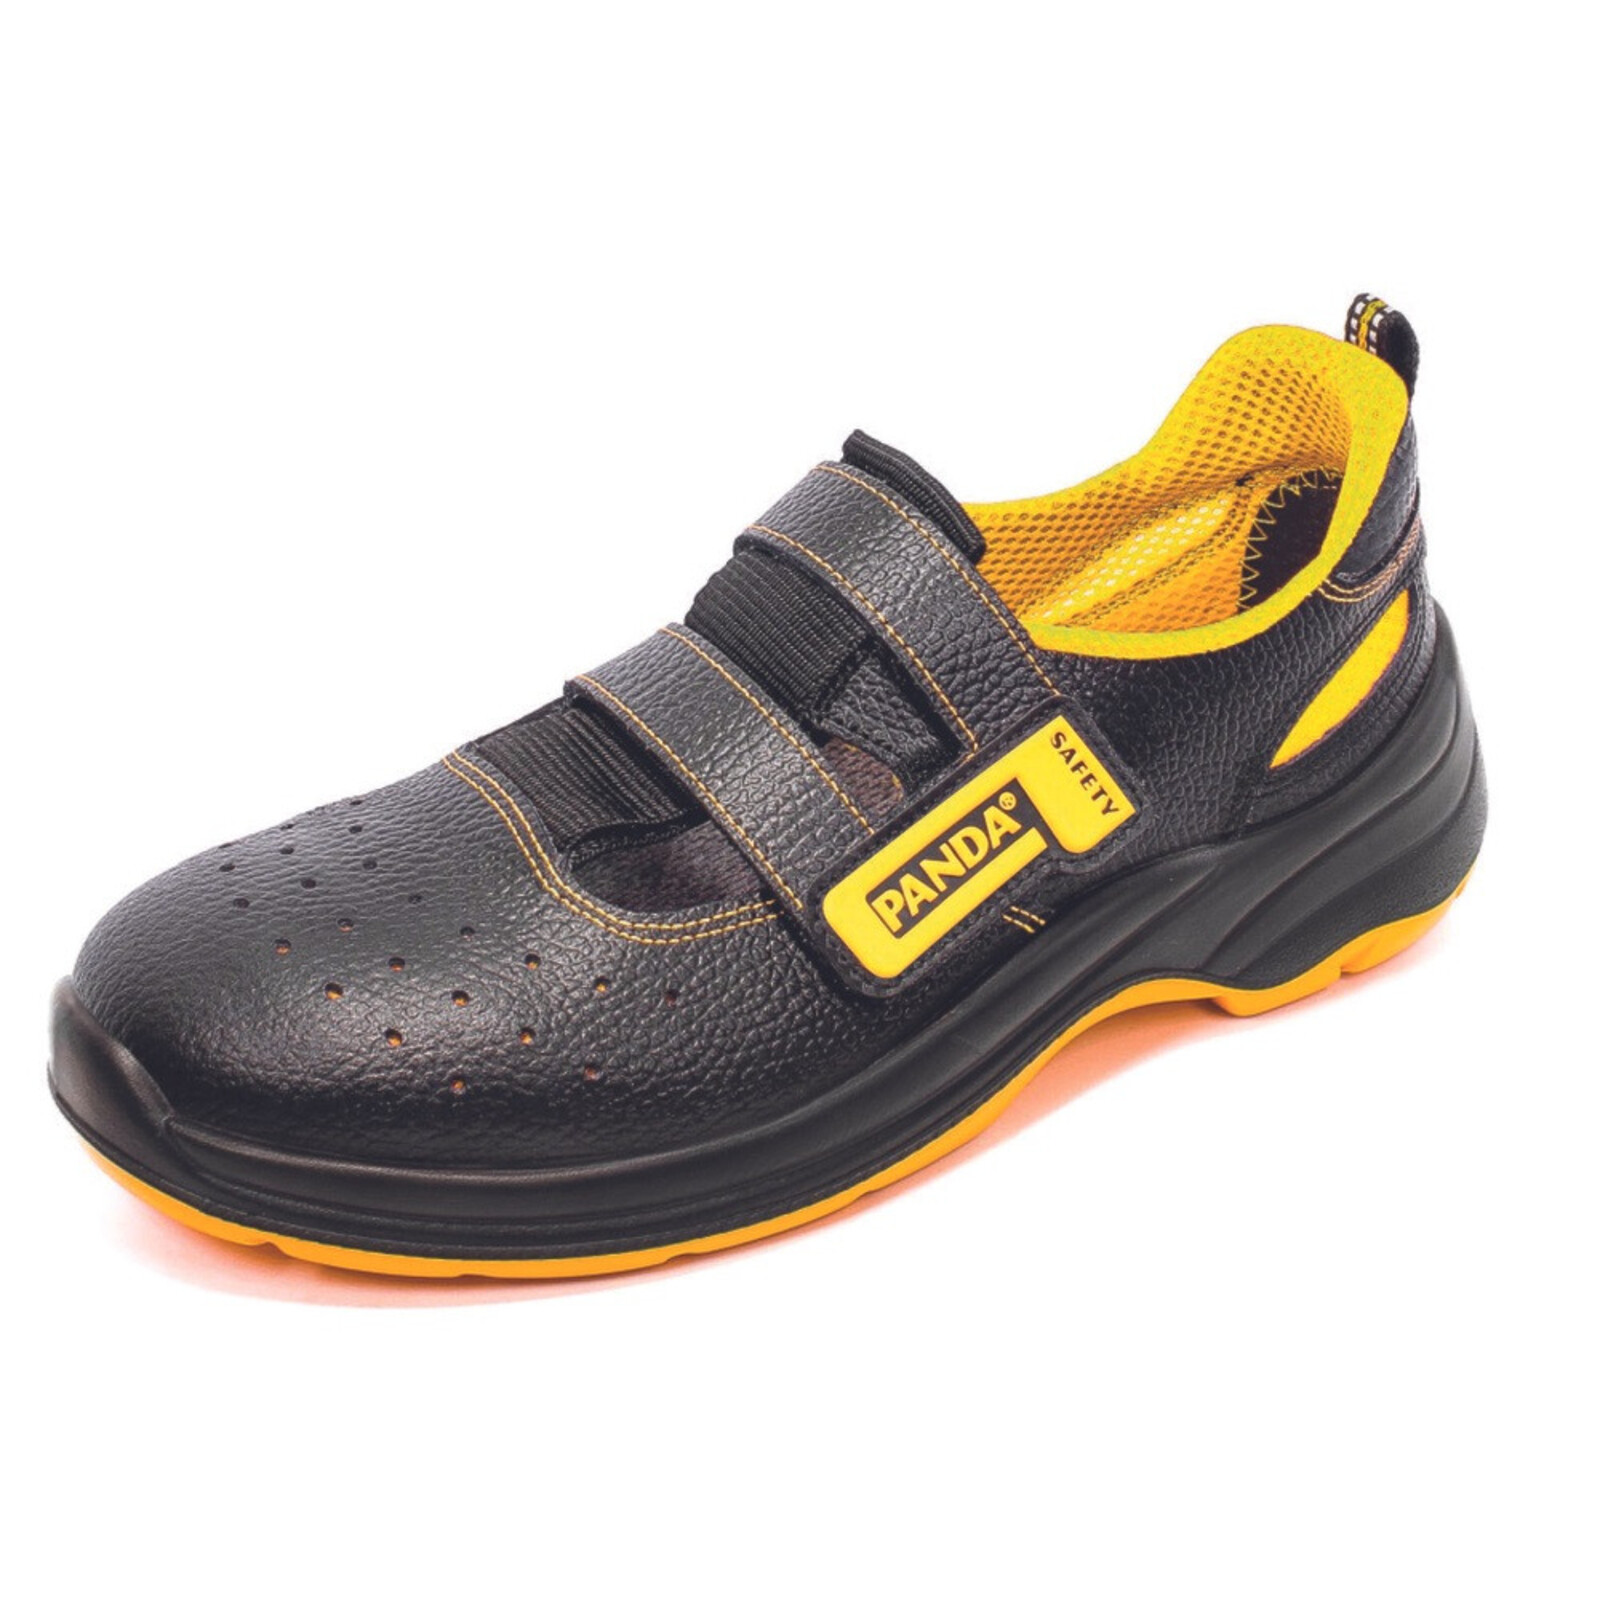 Bezpečnostné sandále Panda Basic Venezia MF S1P SRC - veľkosť: 48, farba: čierna/žltá